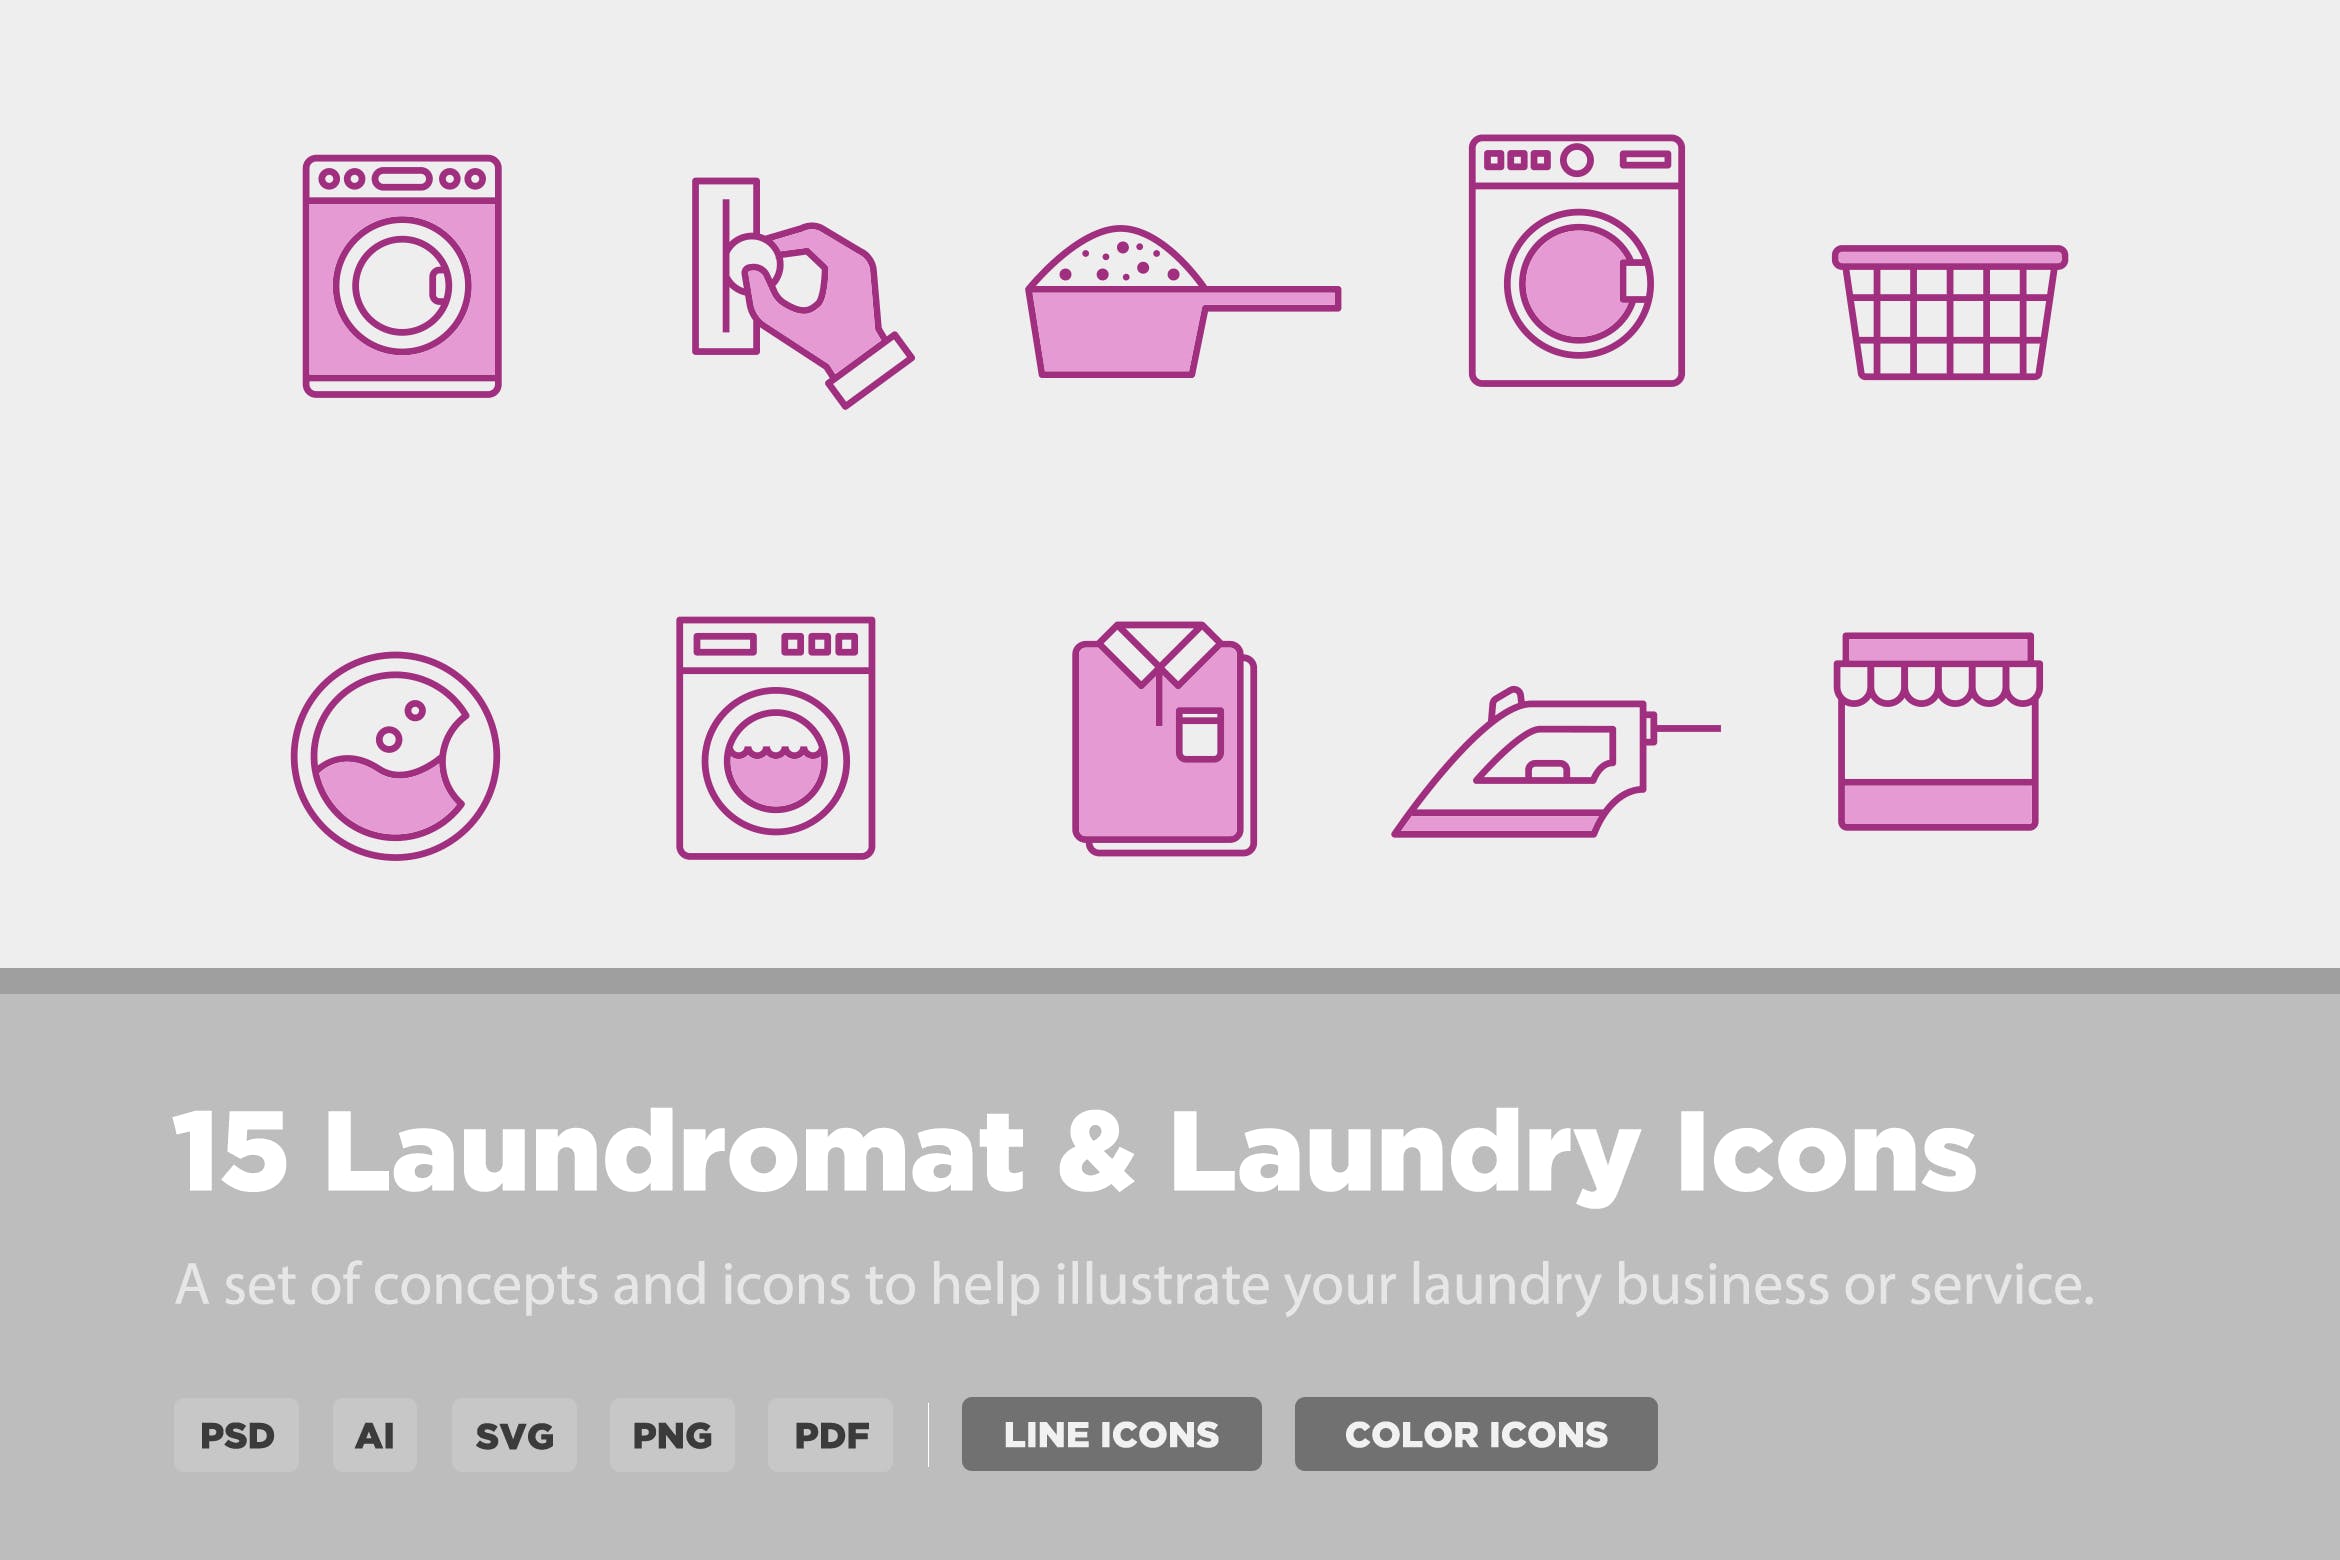 15枚洗衣店和自助洗衣店矢量图标 15 Laundry & Laundromat Icons插图